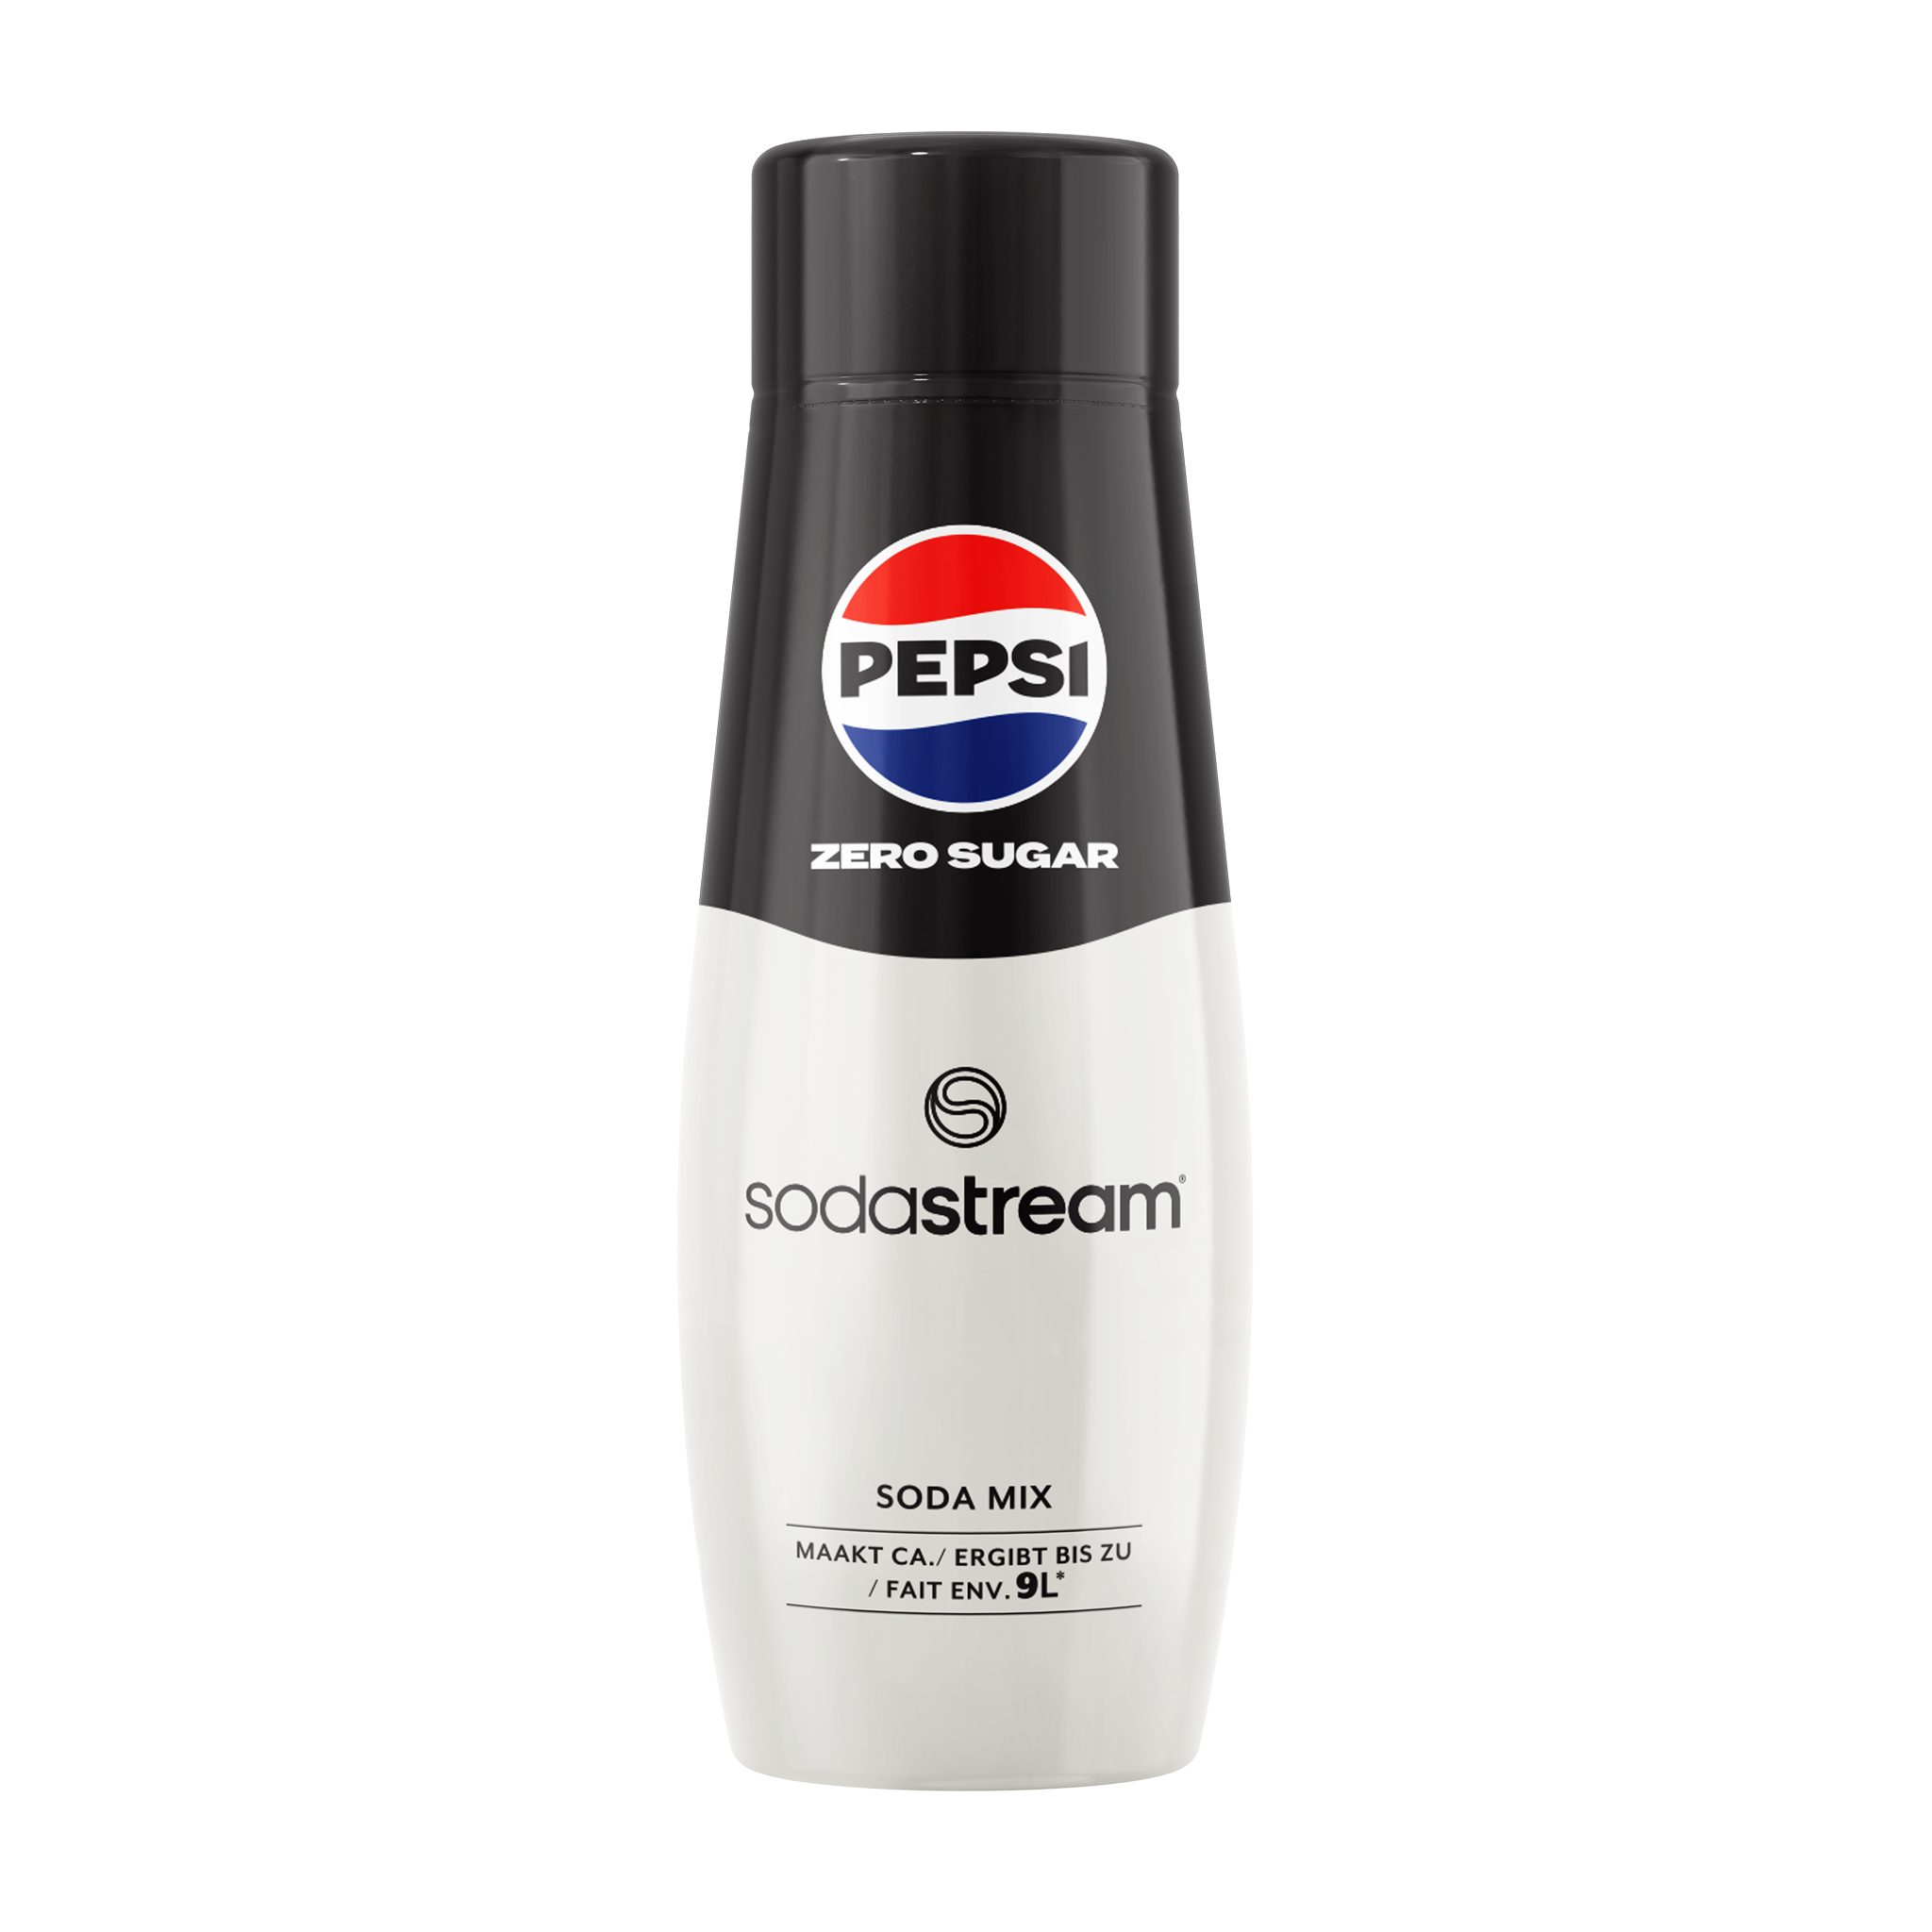 Pepsi Max sodastream